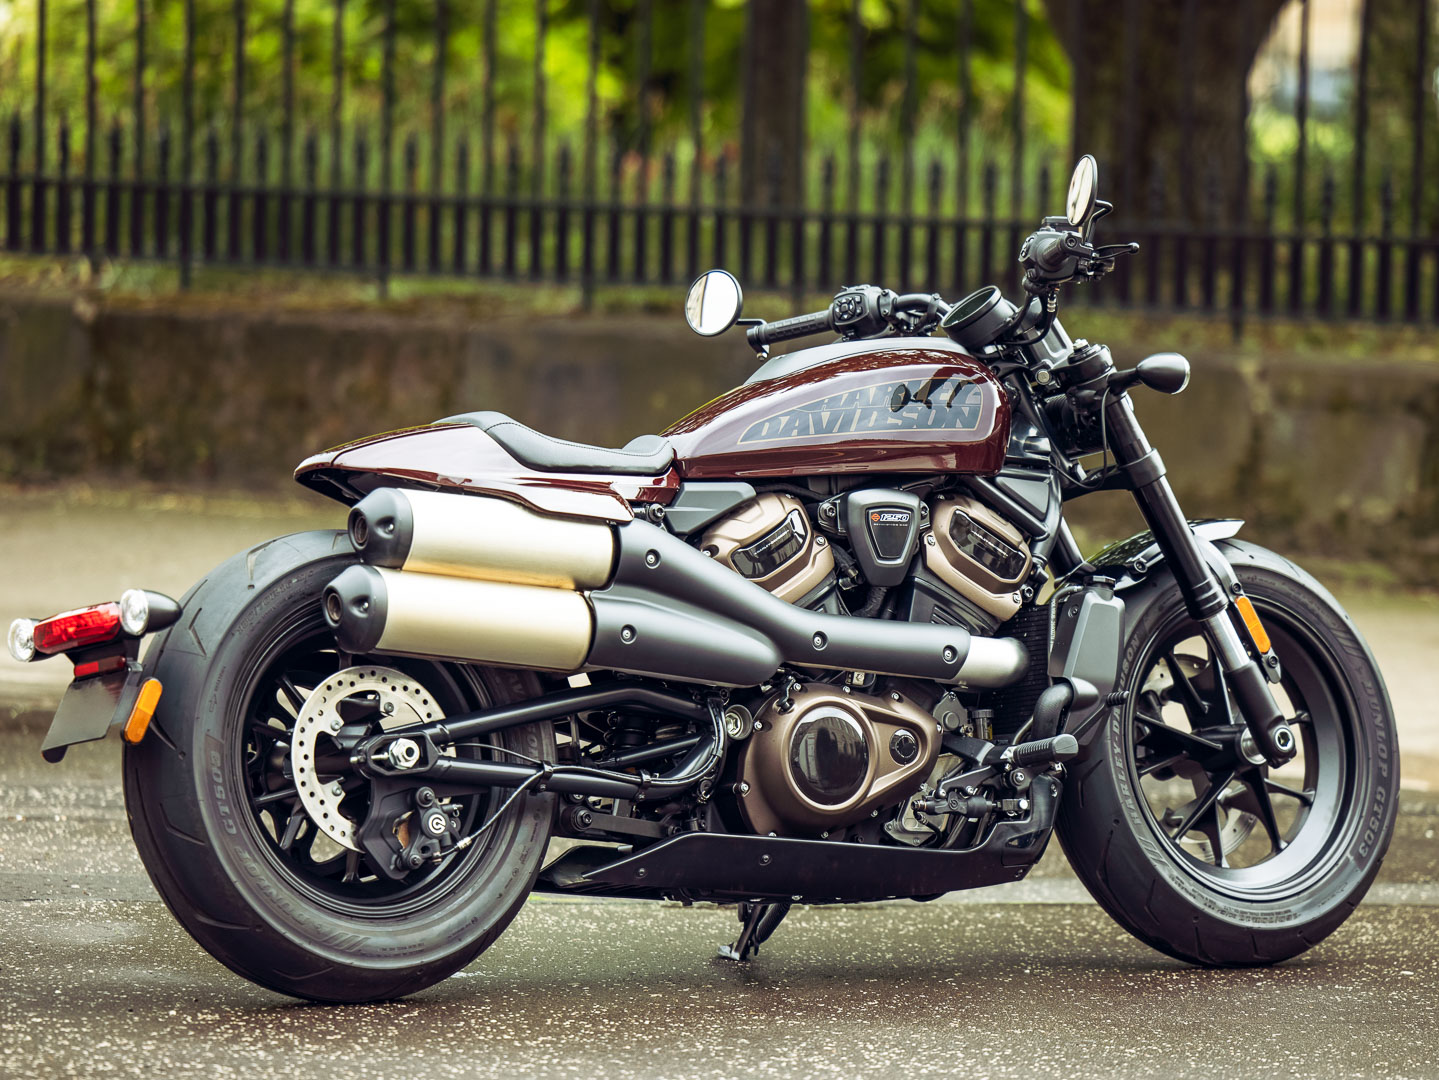 Harley-Davidson Sportster S 2021 với thiết kế đậm chất cơ bắp và đột phá với ống xả đôi lắp trên cao, động cơ thế hệ mới nhất Revolution Max 1250T mạnh mẽ, công suất 121hp, van biến thiên, làm mát bằng dung dịch